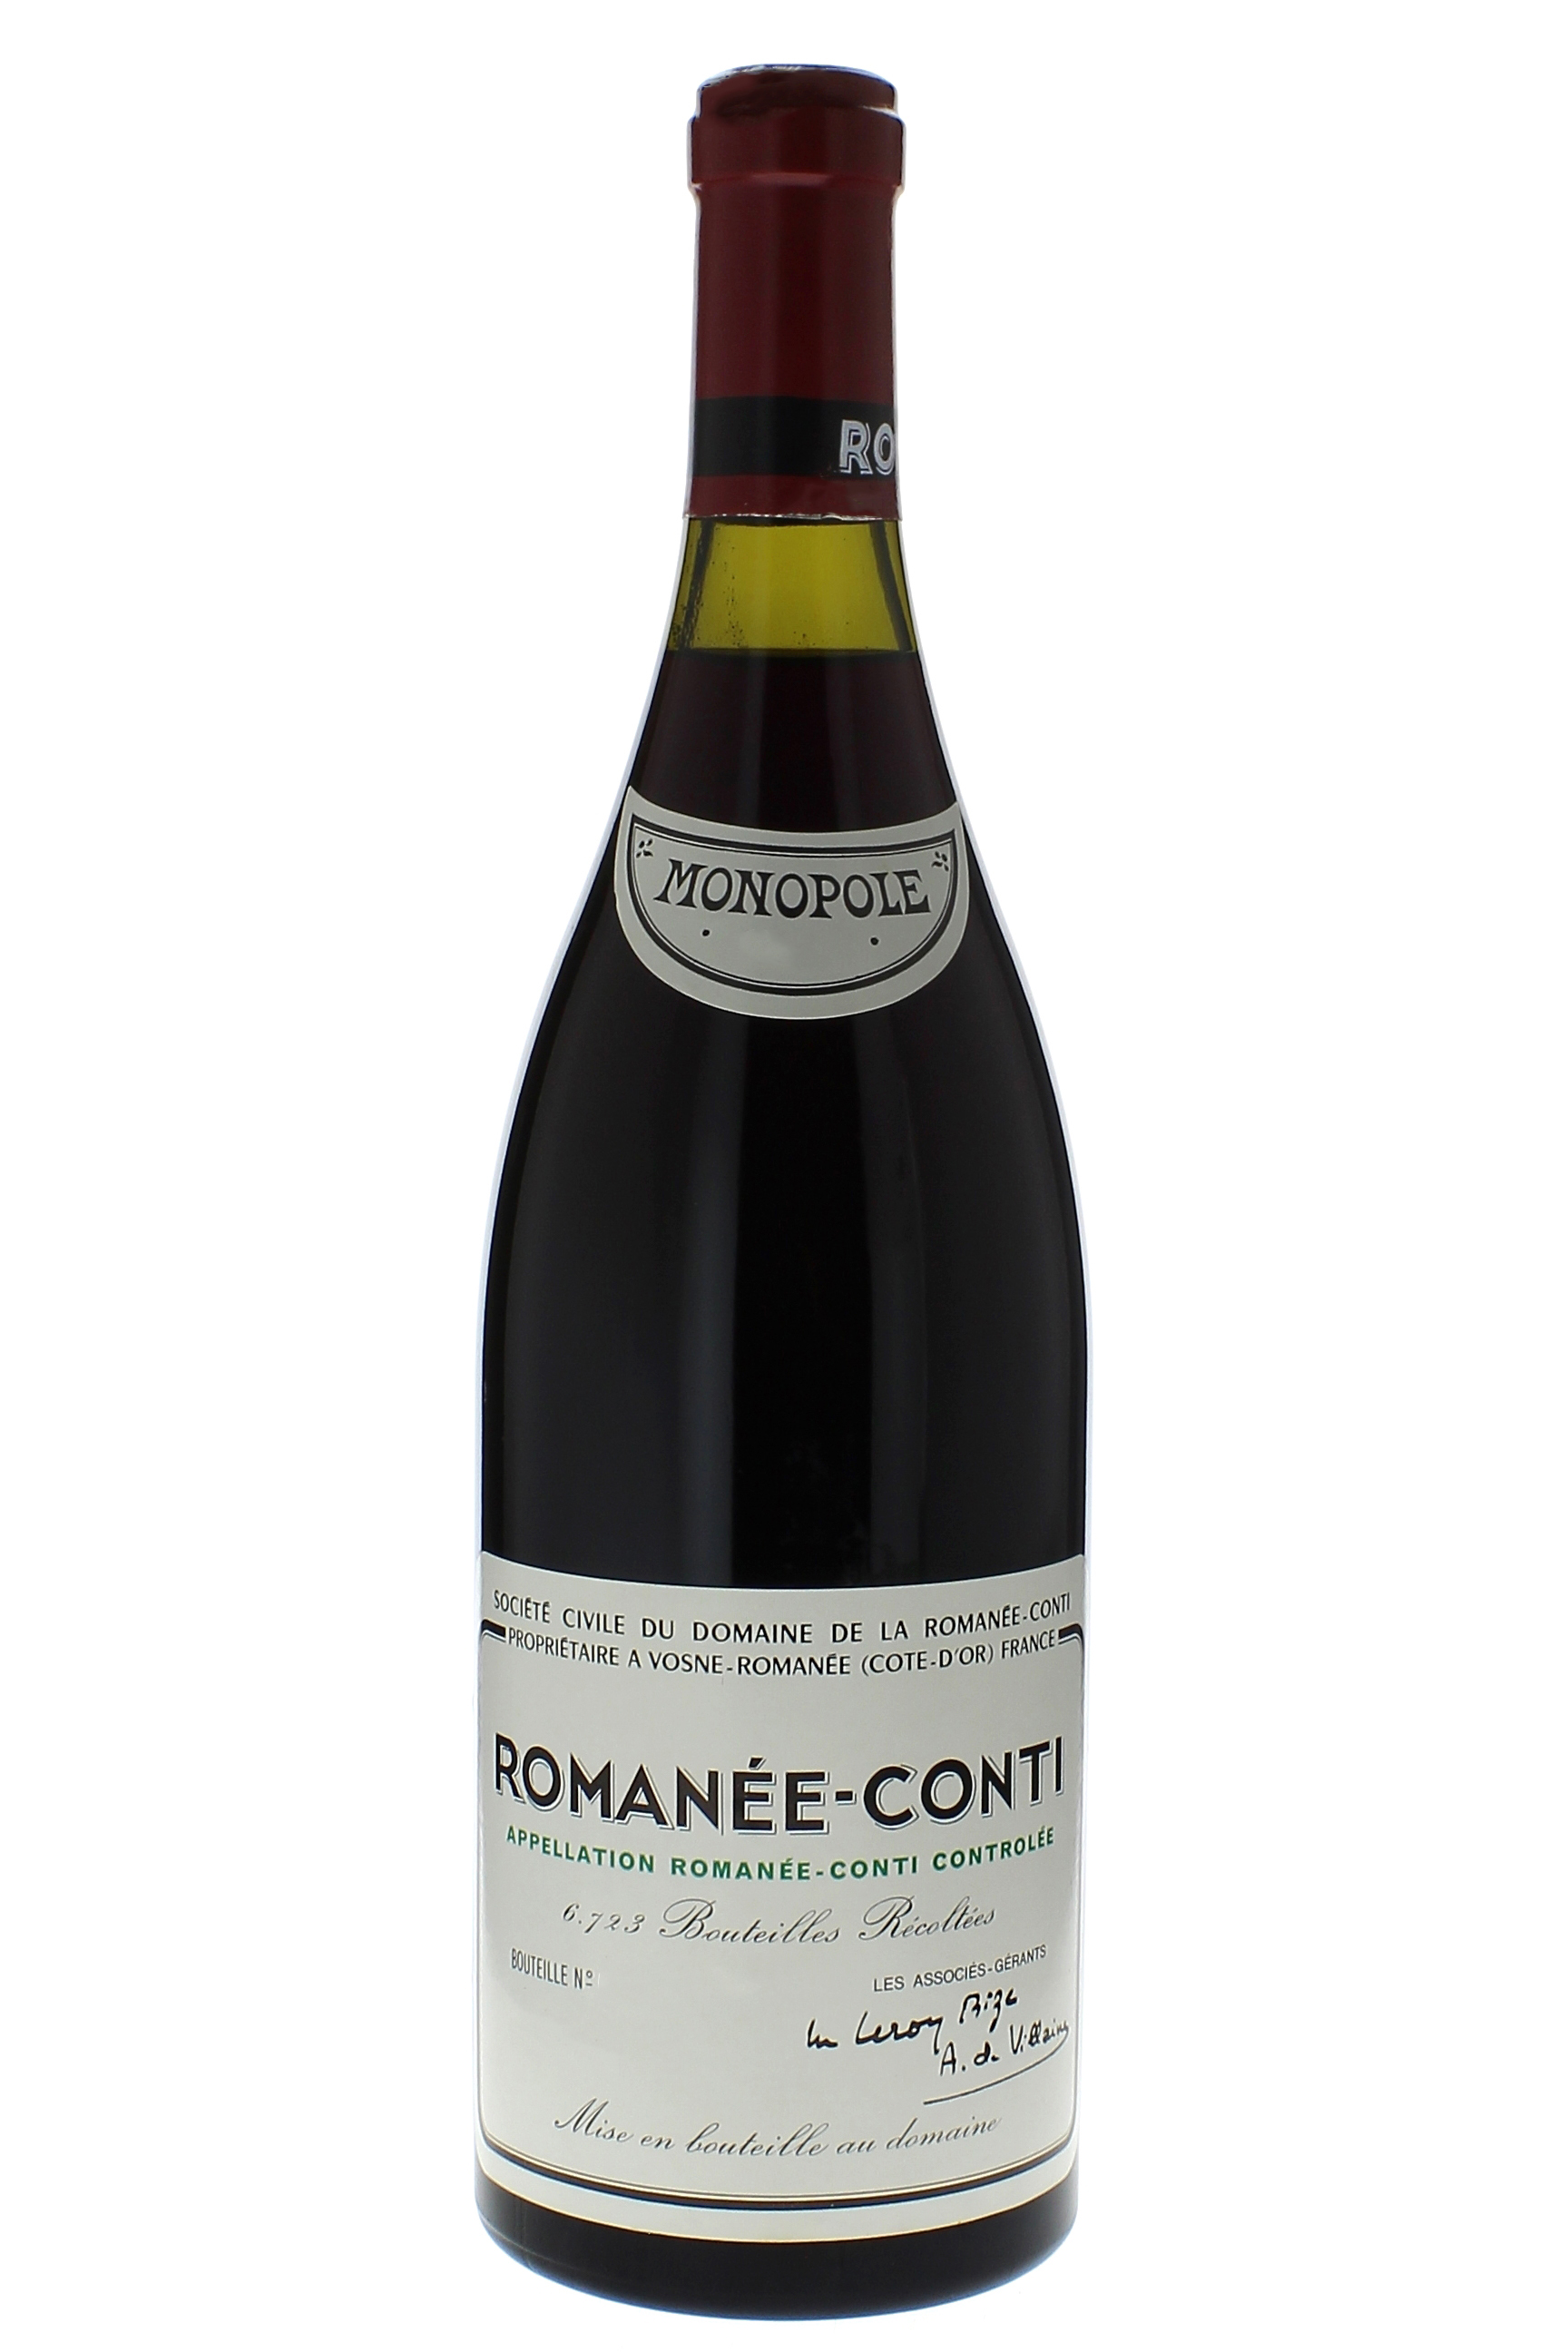 Romane conti grand cru 2002 Domaine ROMANEE CONTI, Bourgogne rouge